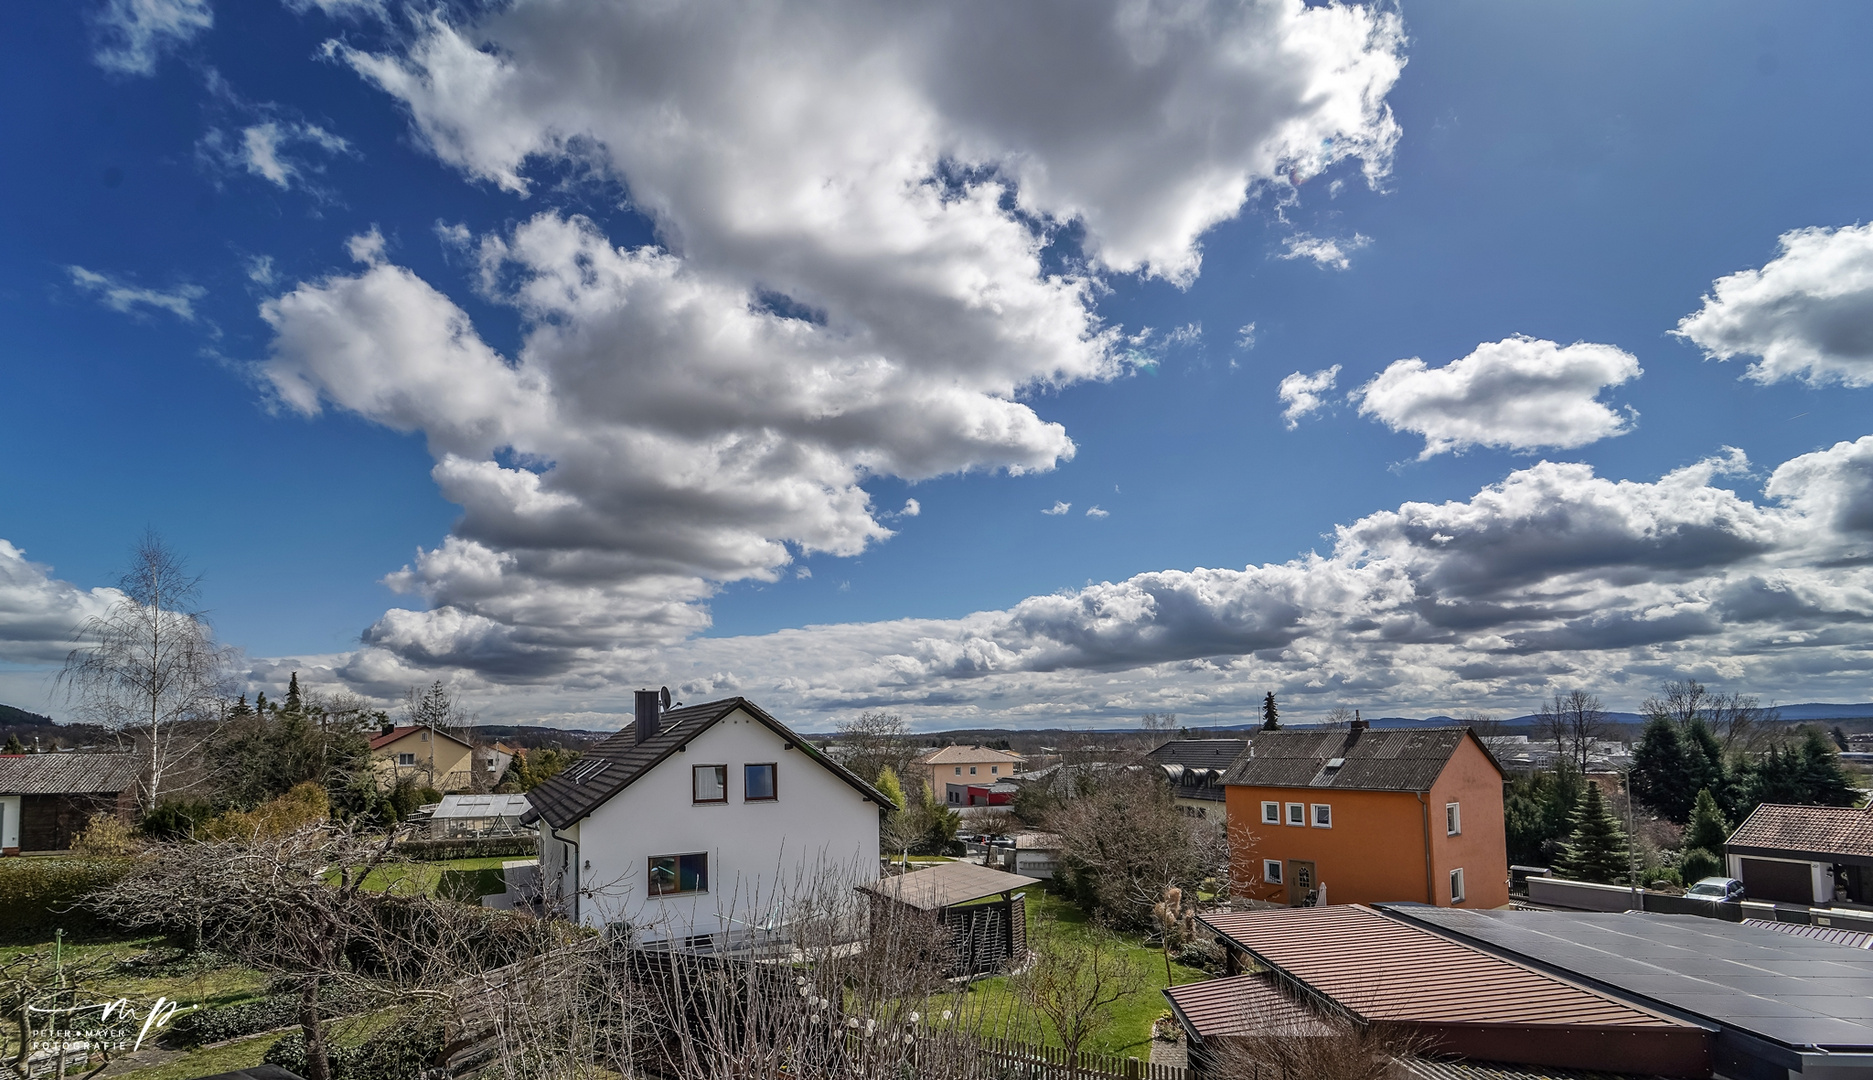 Schwandorf bewölkt oder in cooler Fotografensprache "Cloudporn"